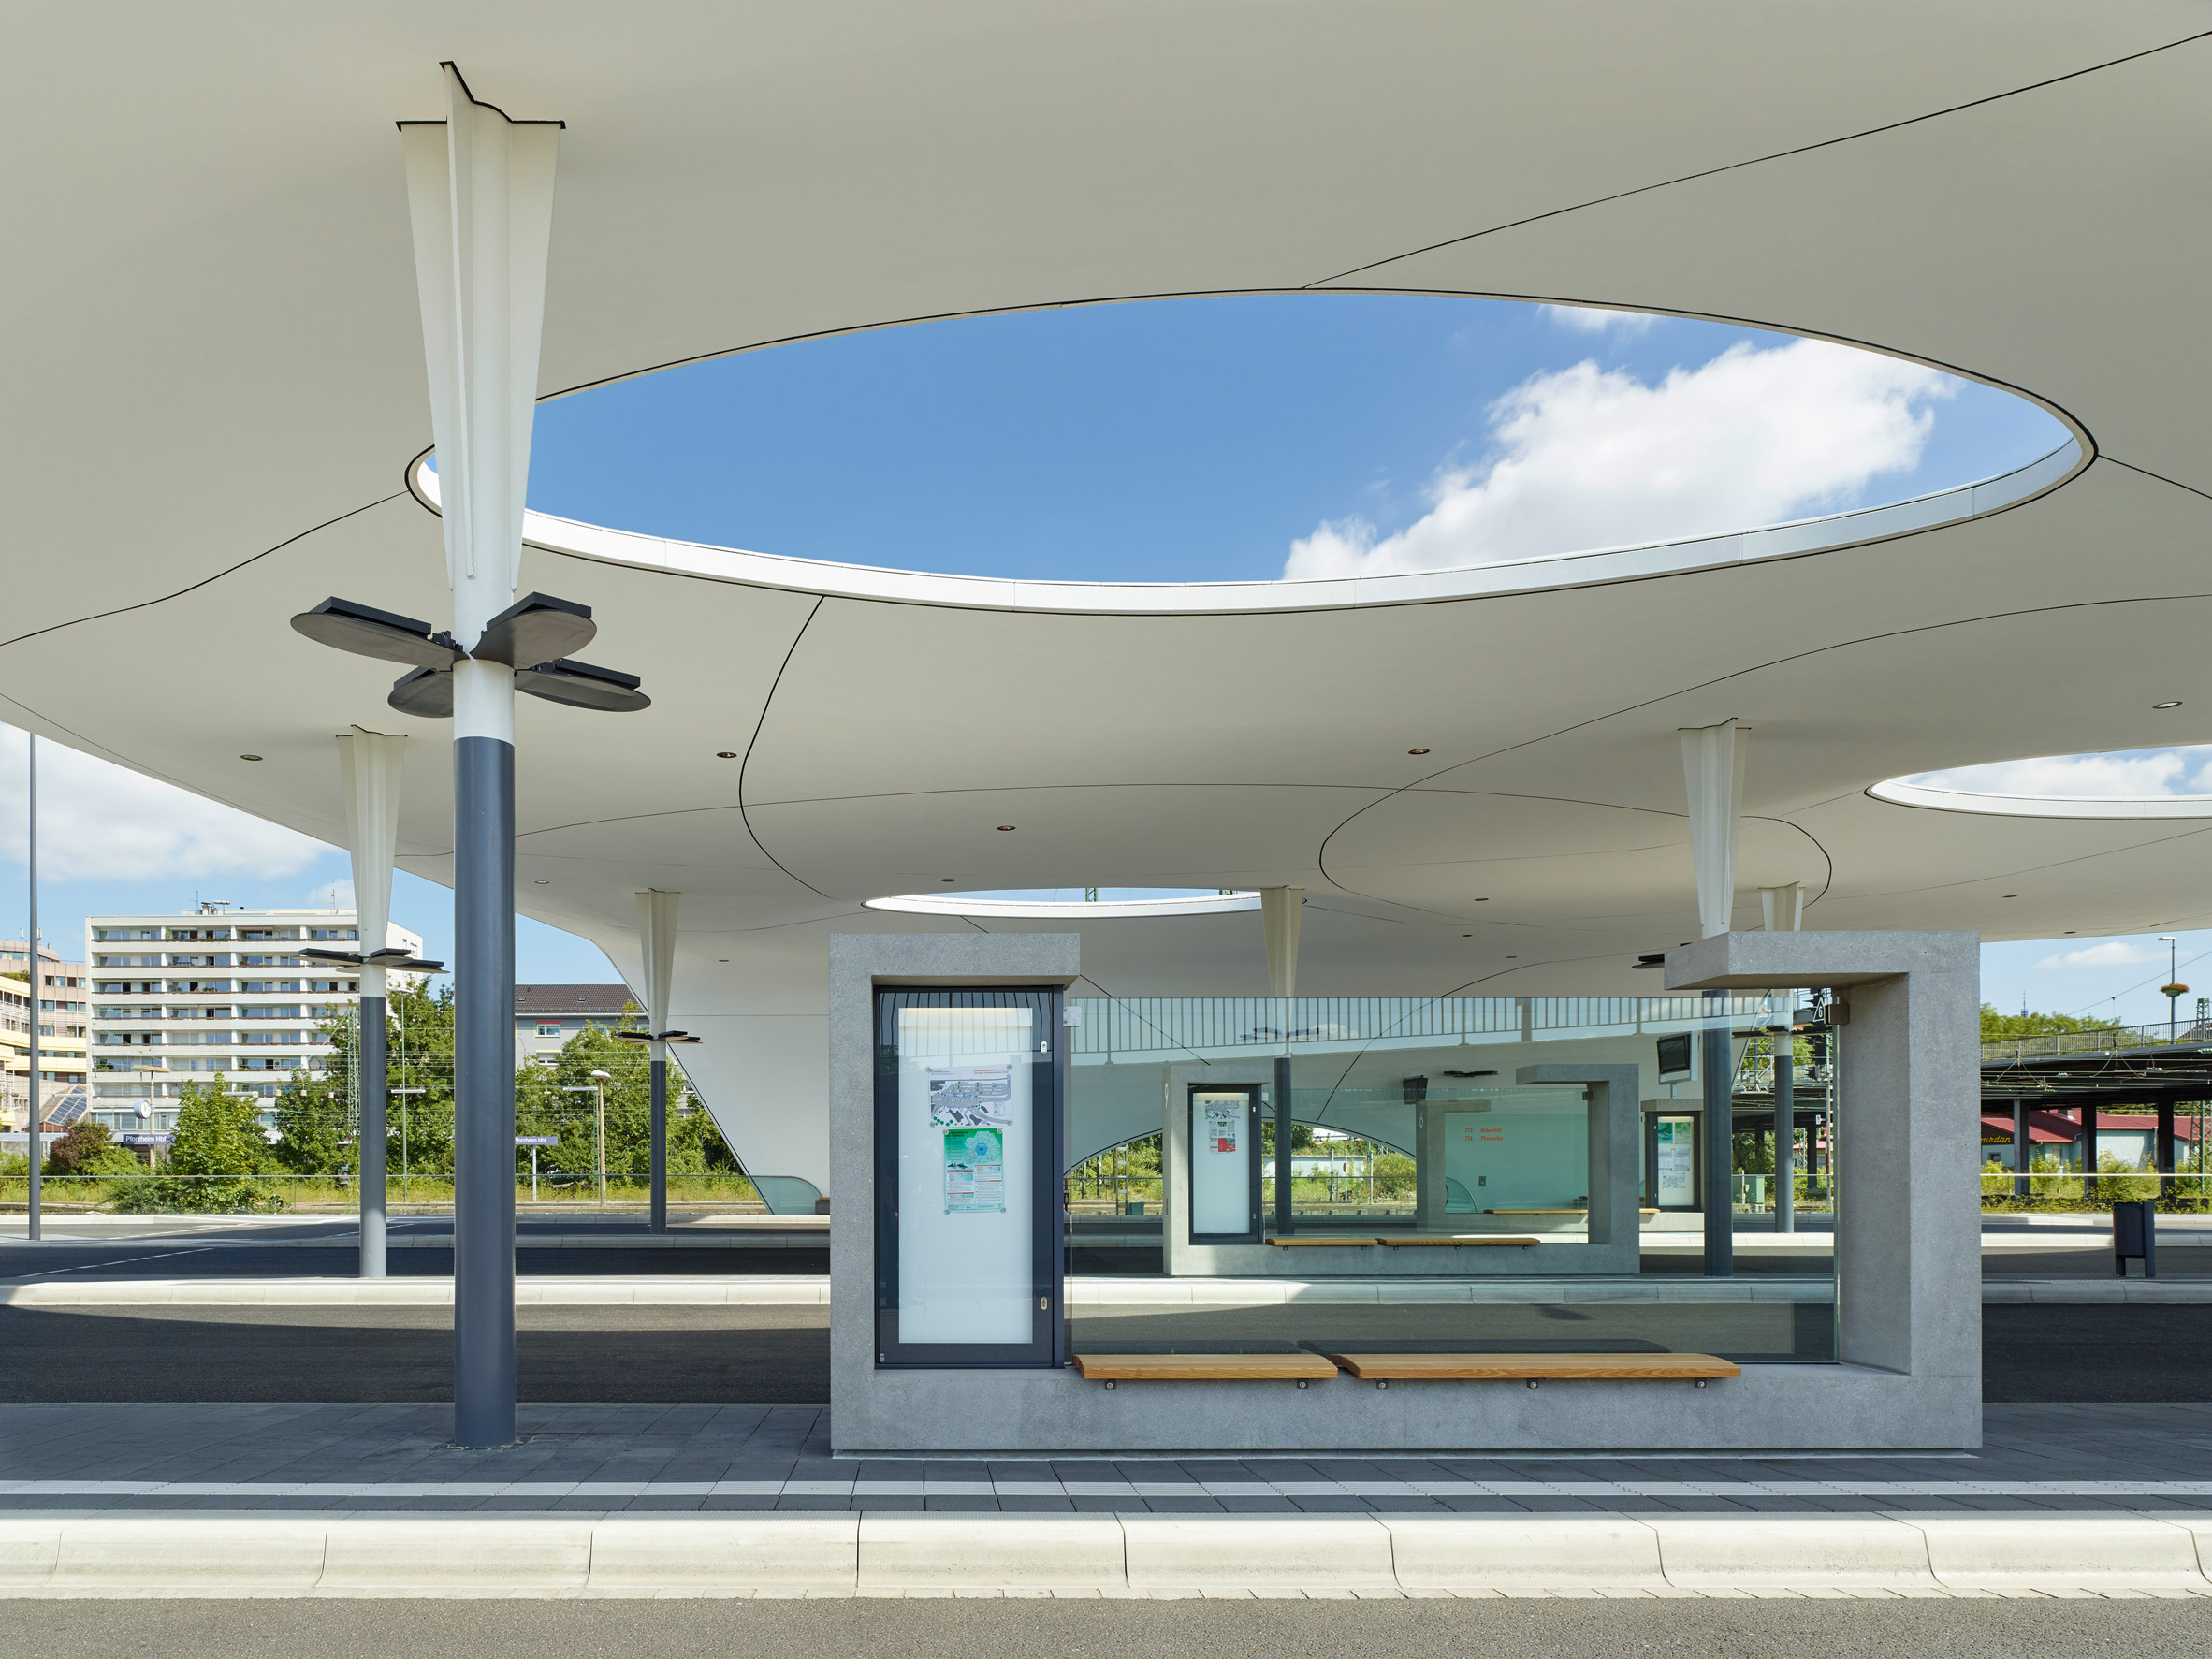 Central Bus Station by Metaraum Architekten